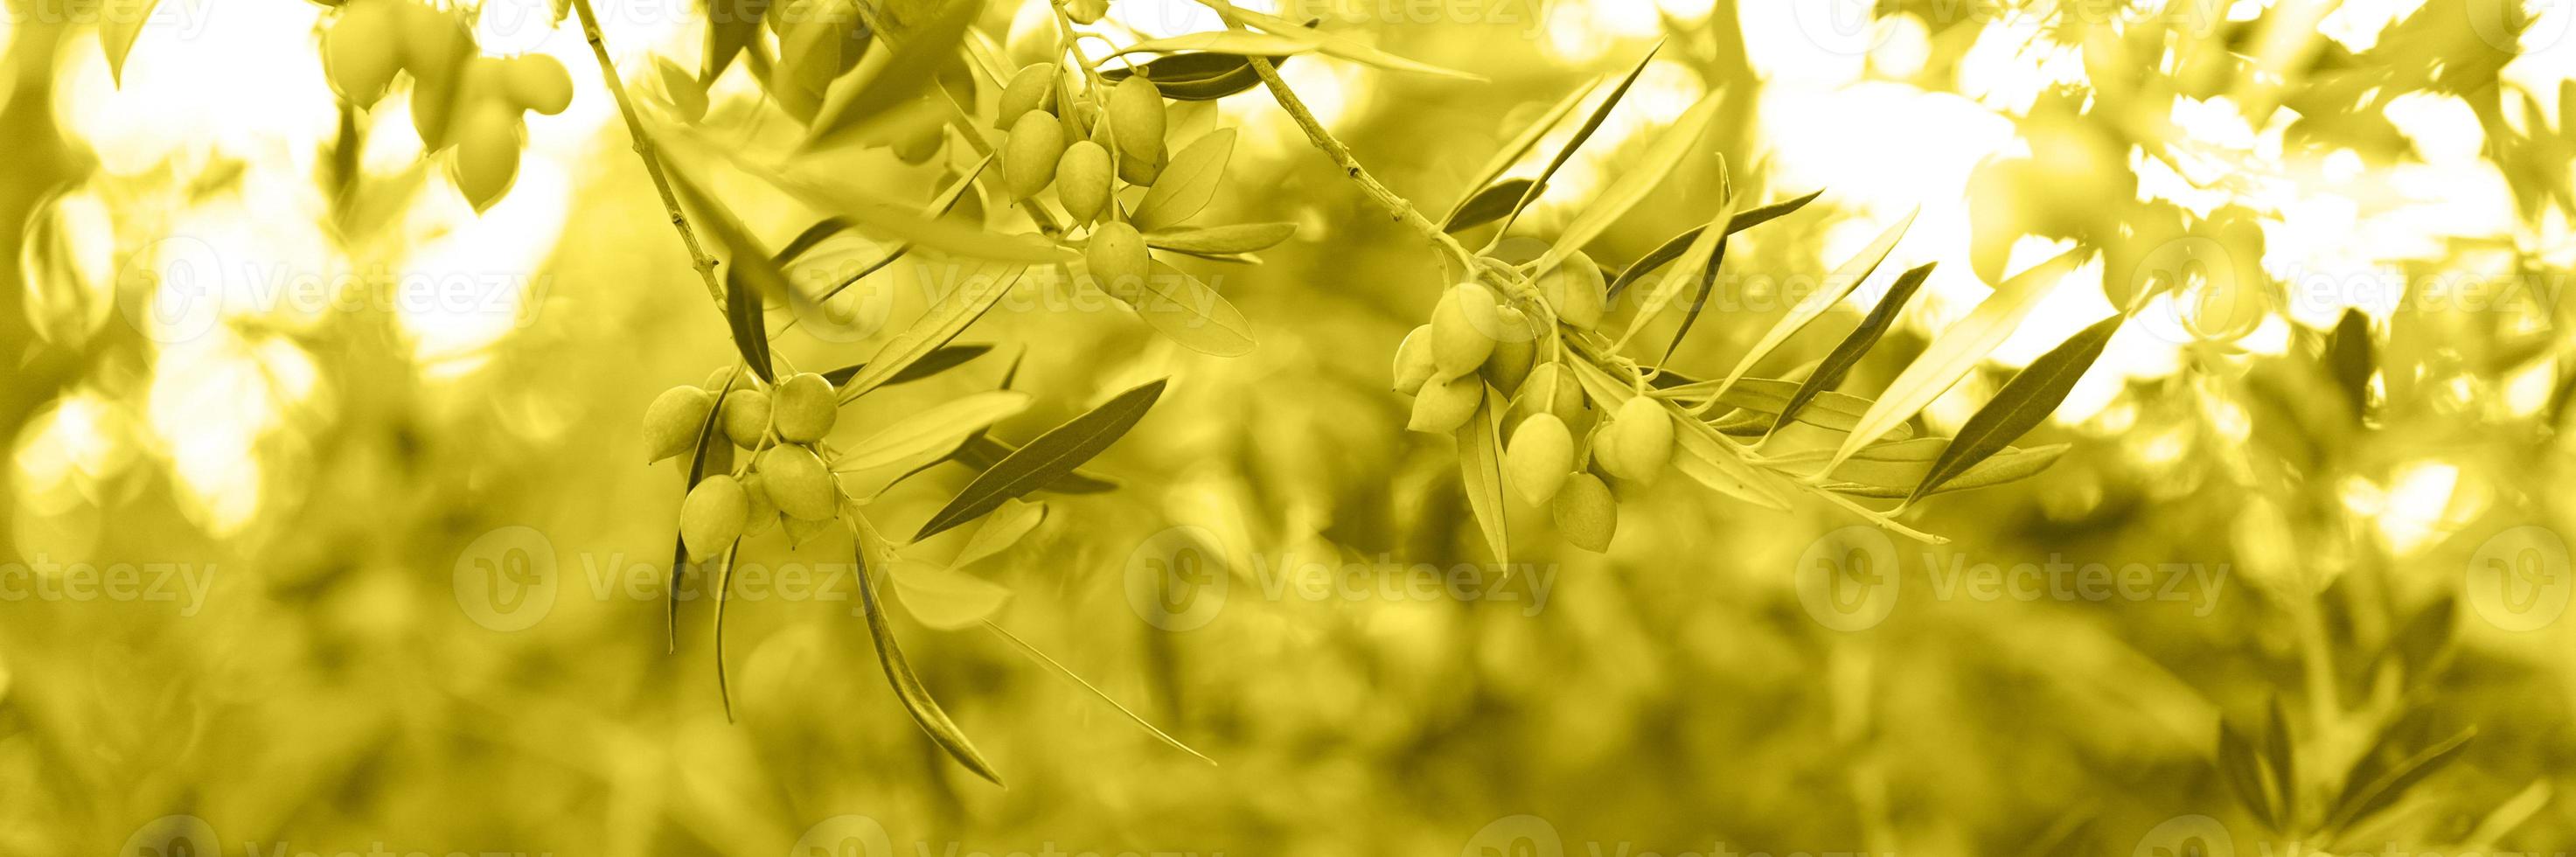 grüne Oliven, die auf einem Olivenbaumzweig im Garten wachsen foto